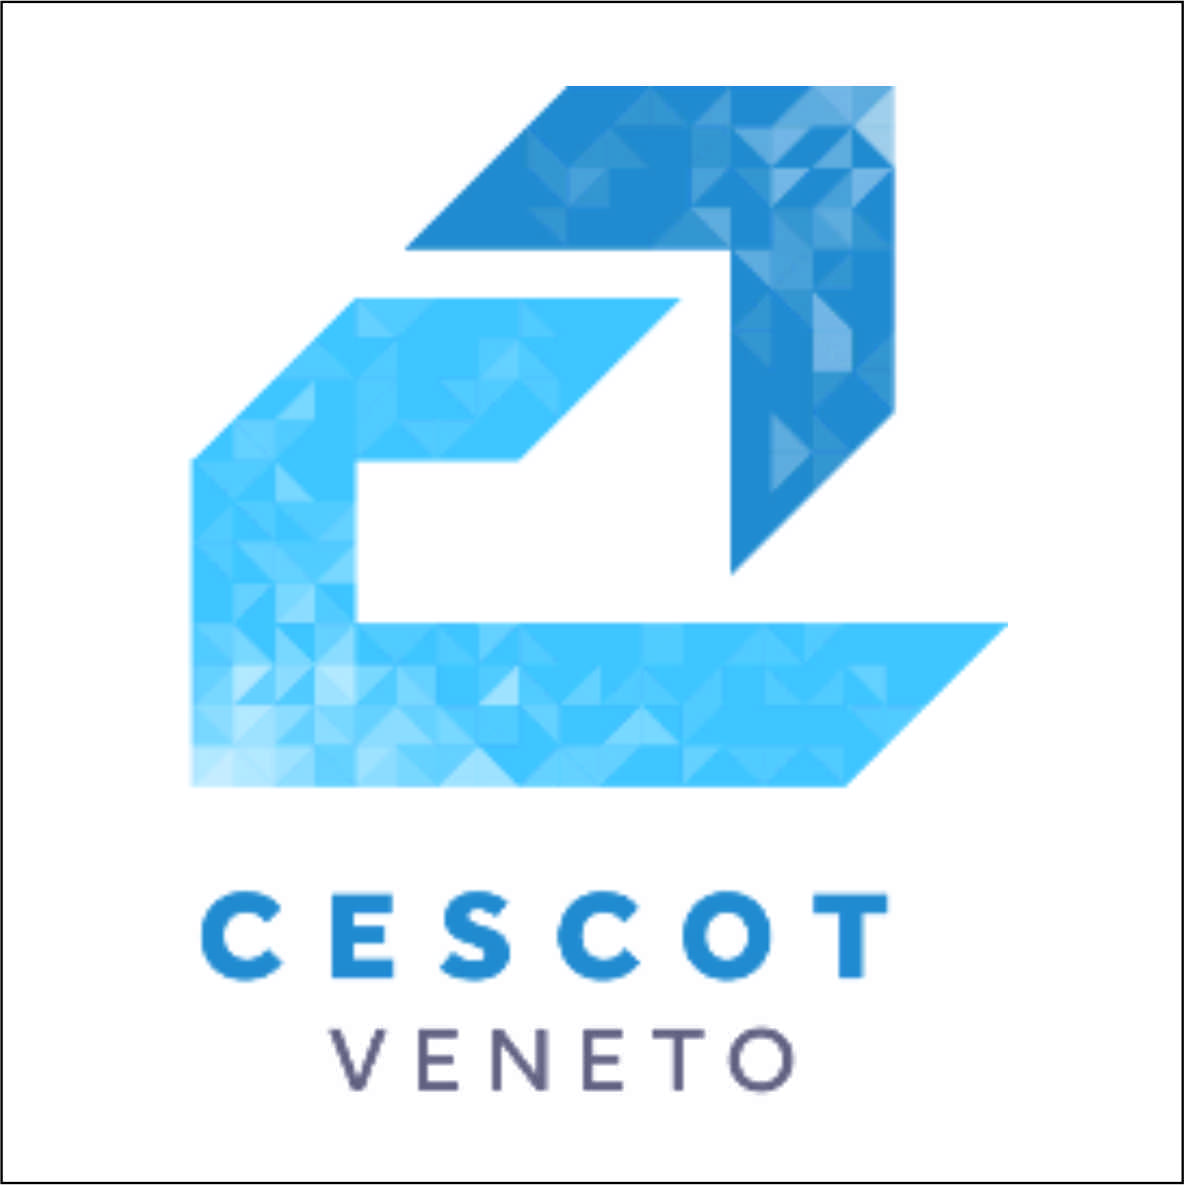 Cescot Veneto